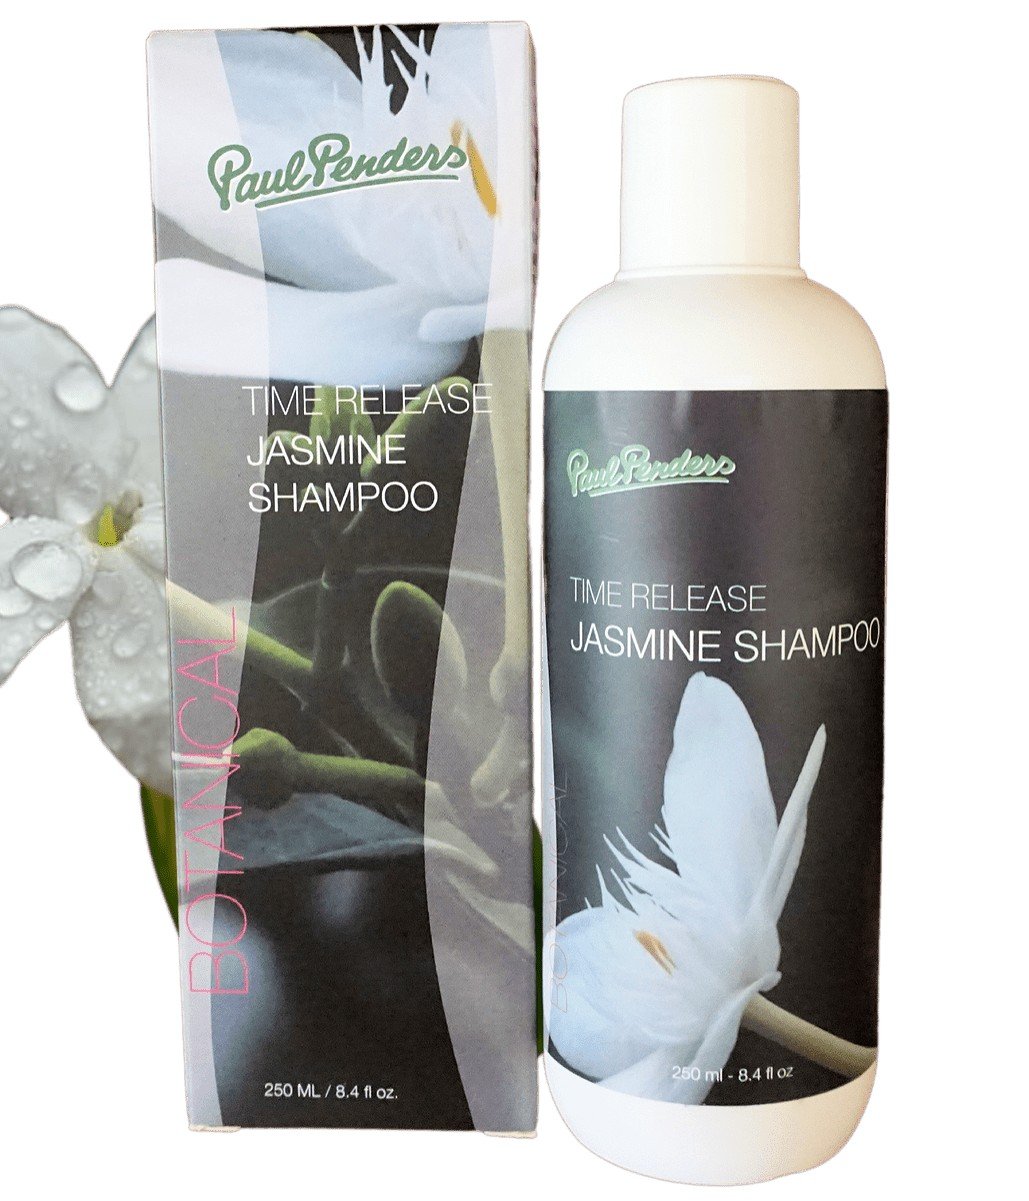 Paul Penders Time Release Jasmine Shampoo 8.4 fl oz Liquid